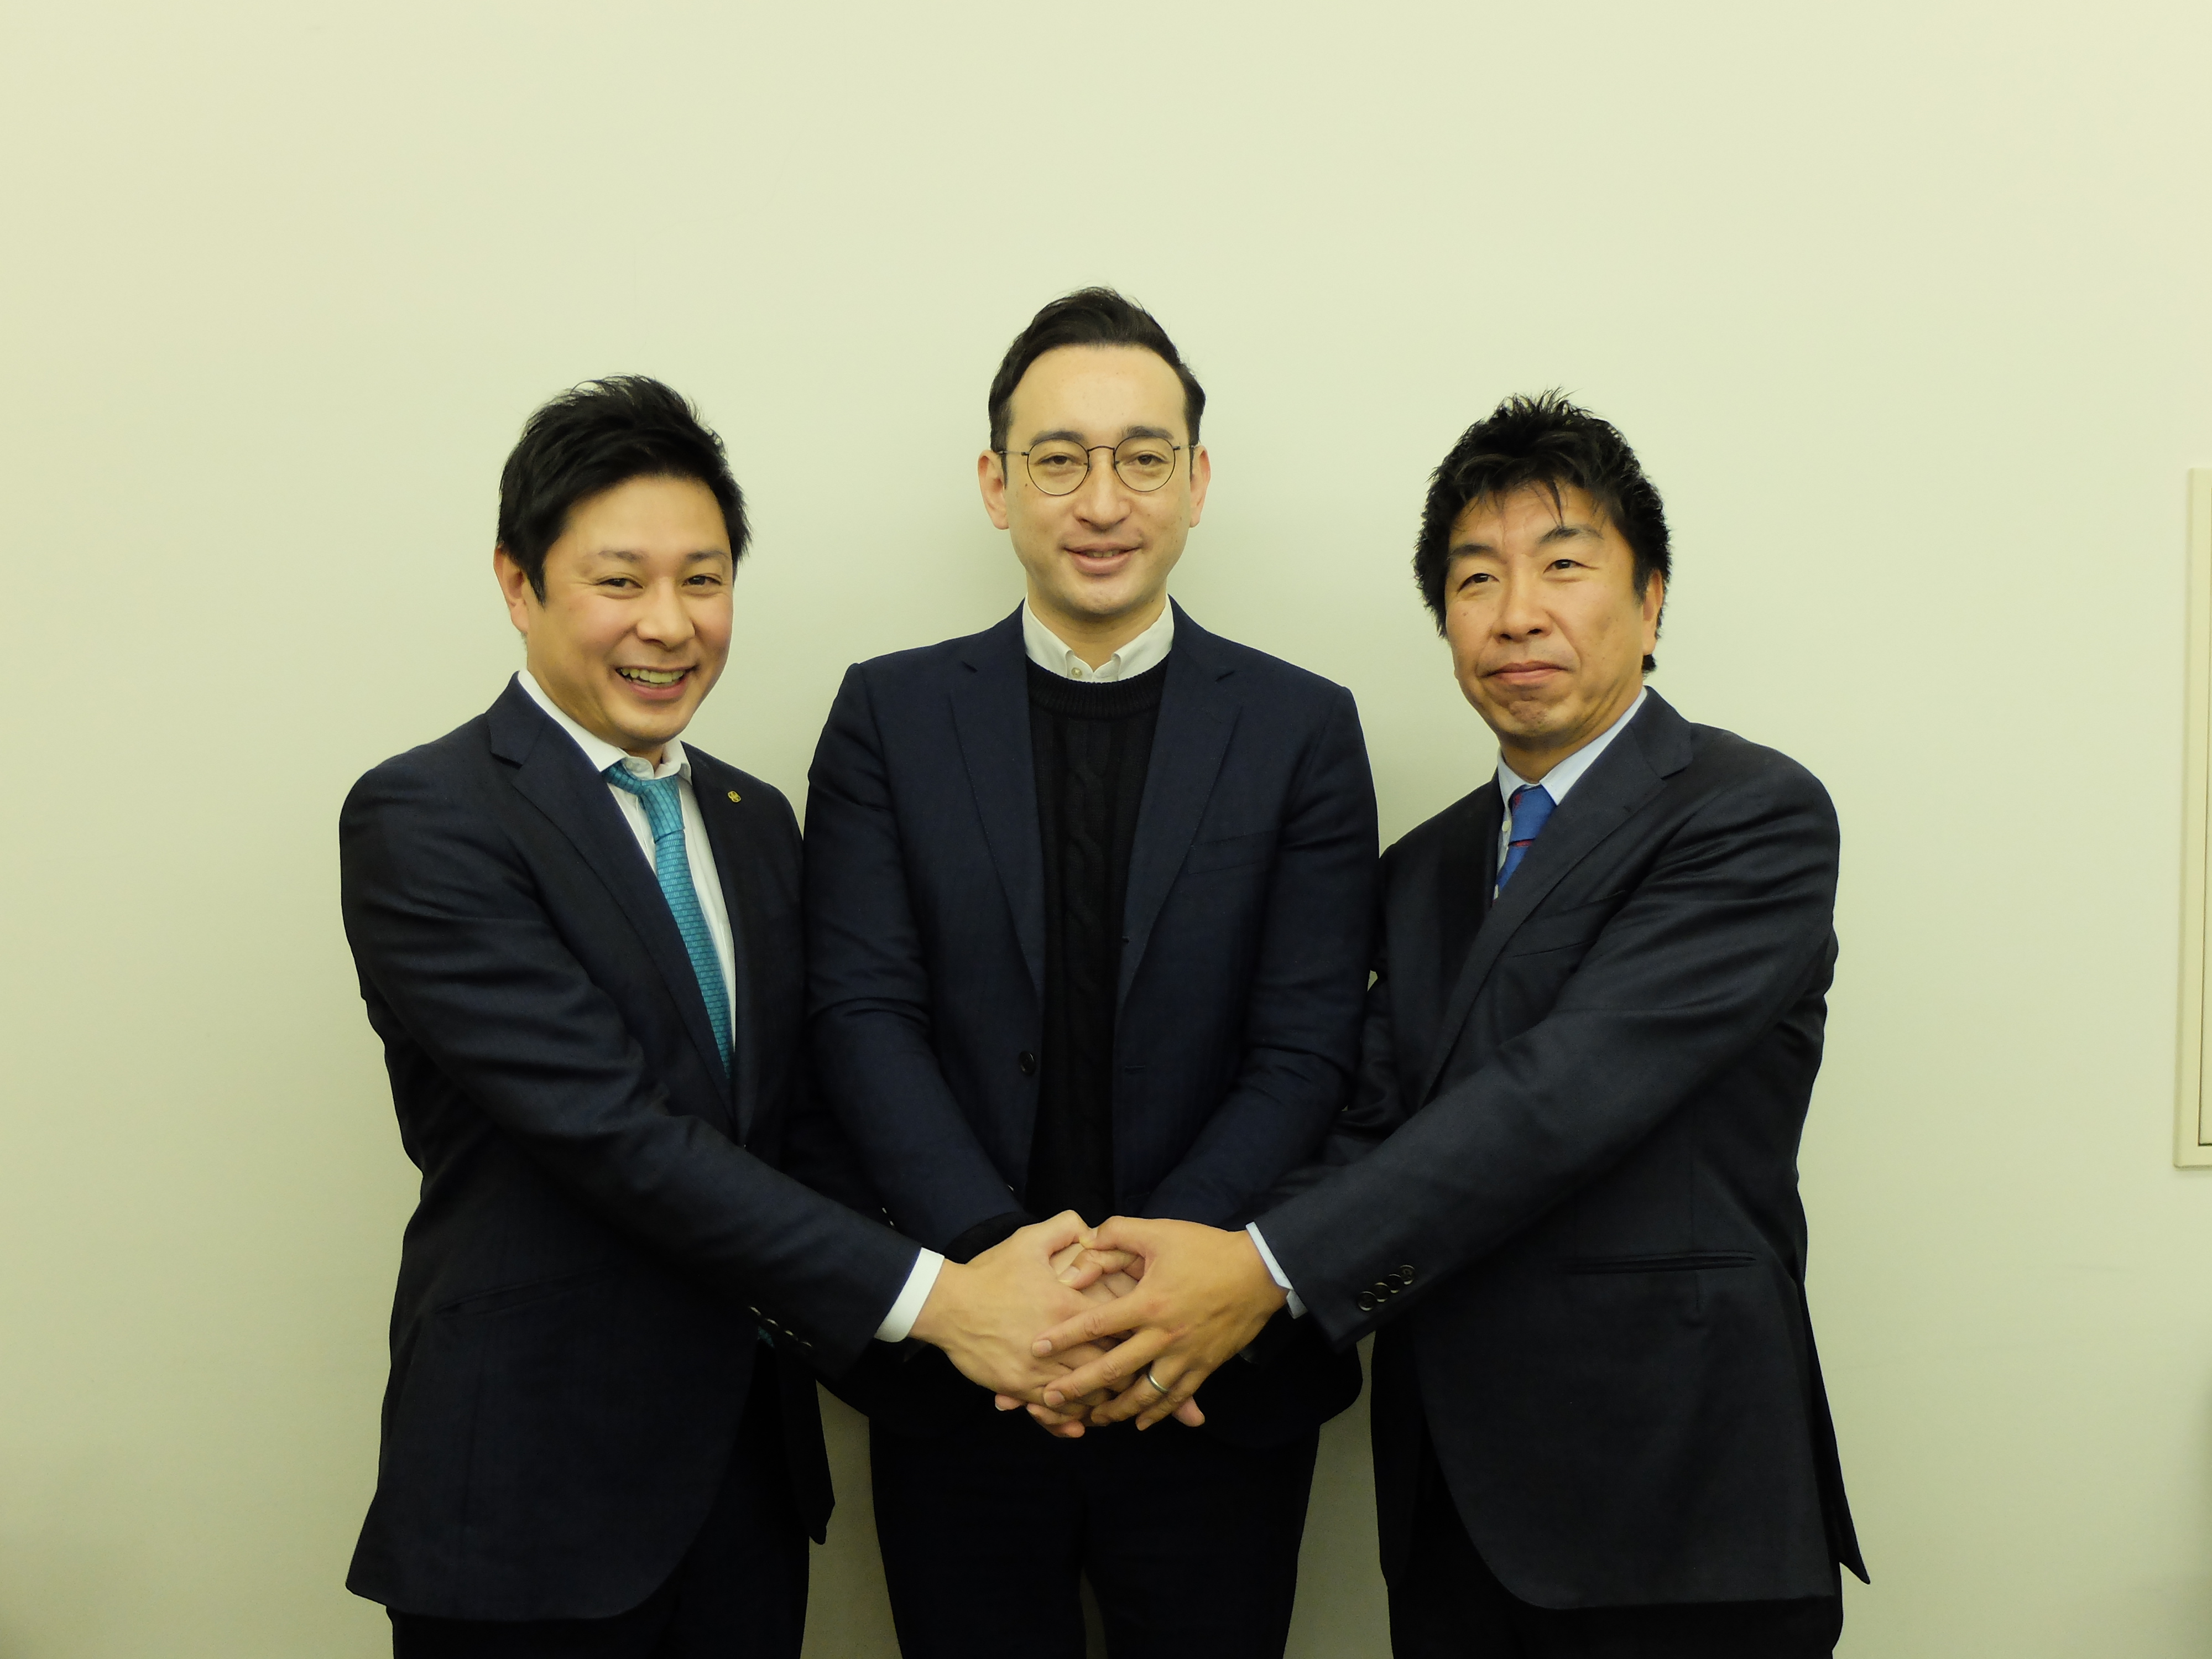 右から旭食品の竹内孝久社長、umamillの佐藤晶洋CEO、旭食品の竹内孝三郞取締役